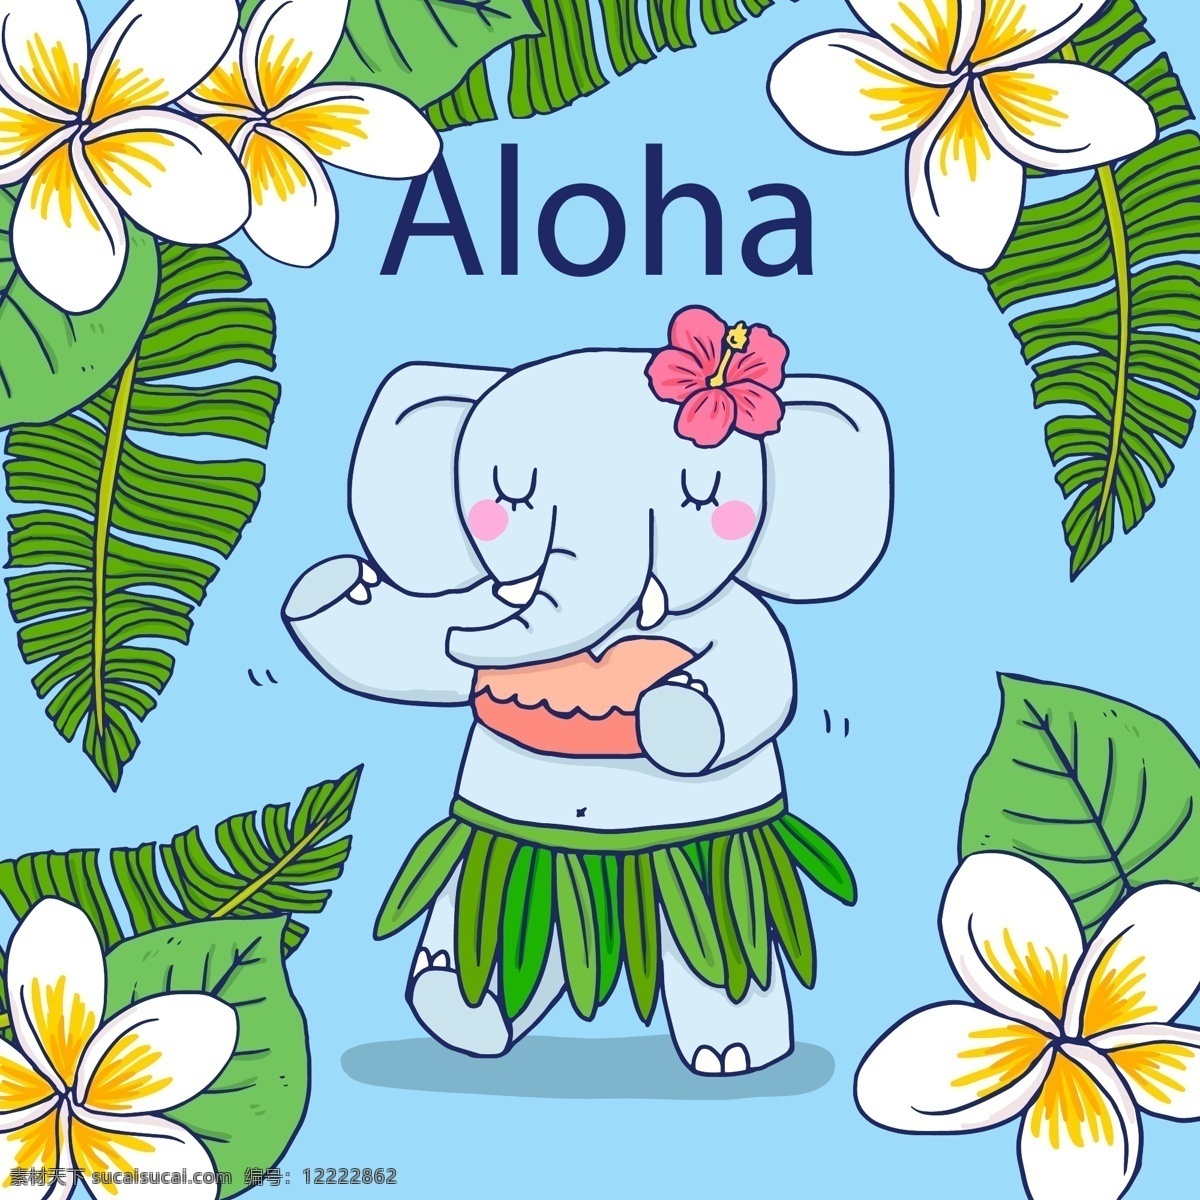 可爱 卡通 大象 插画 动物 植物 花朵 热带